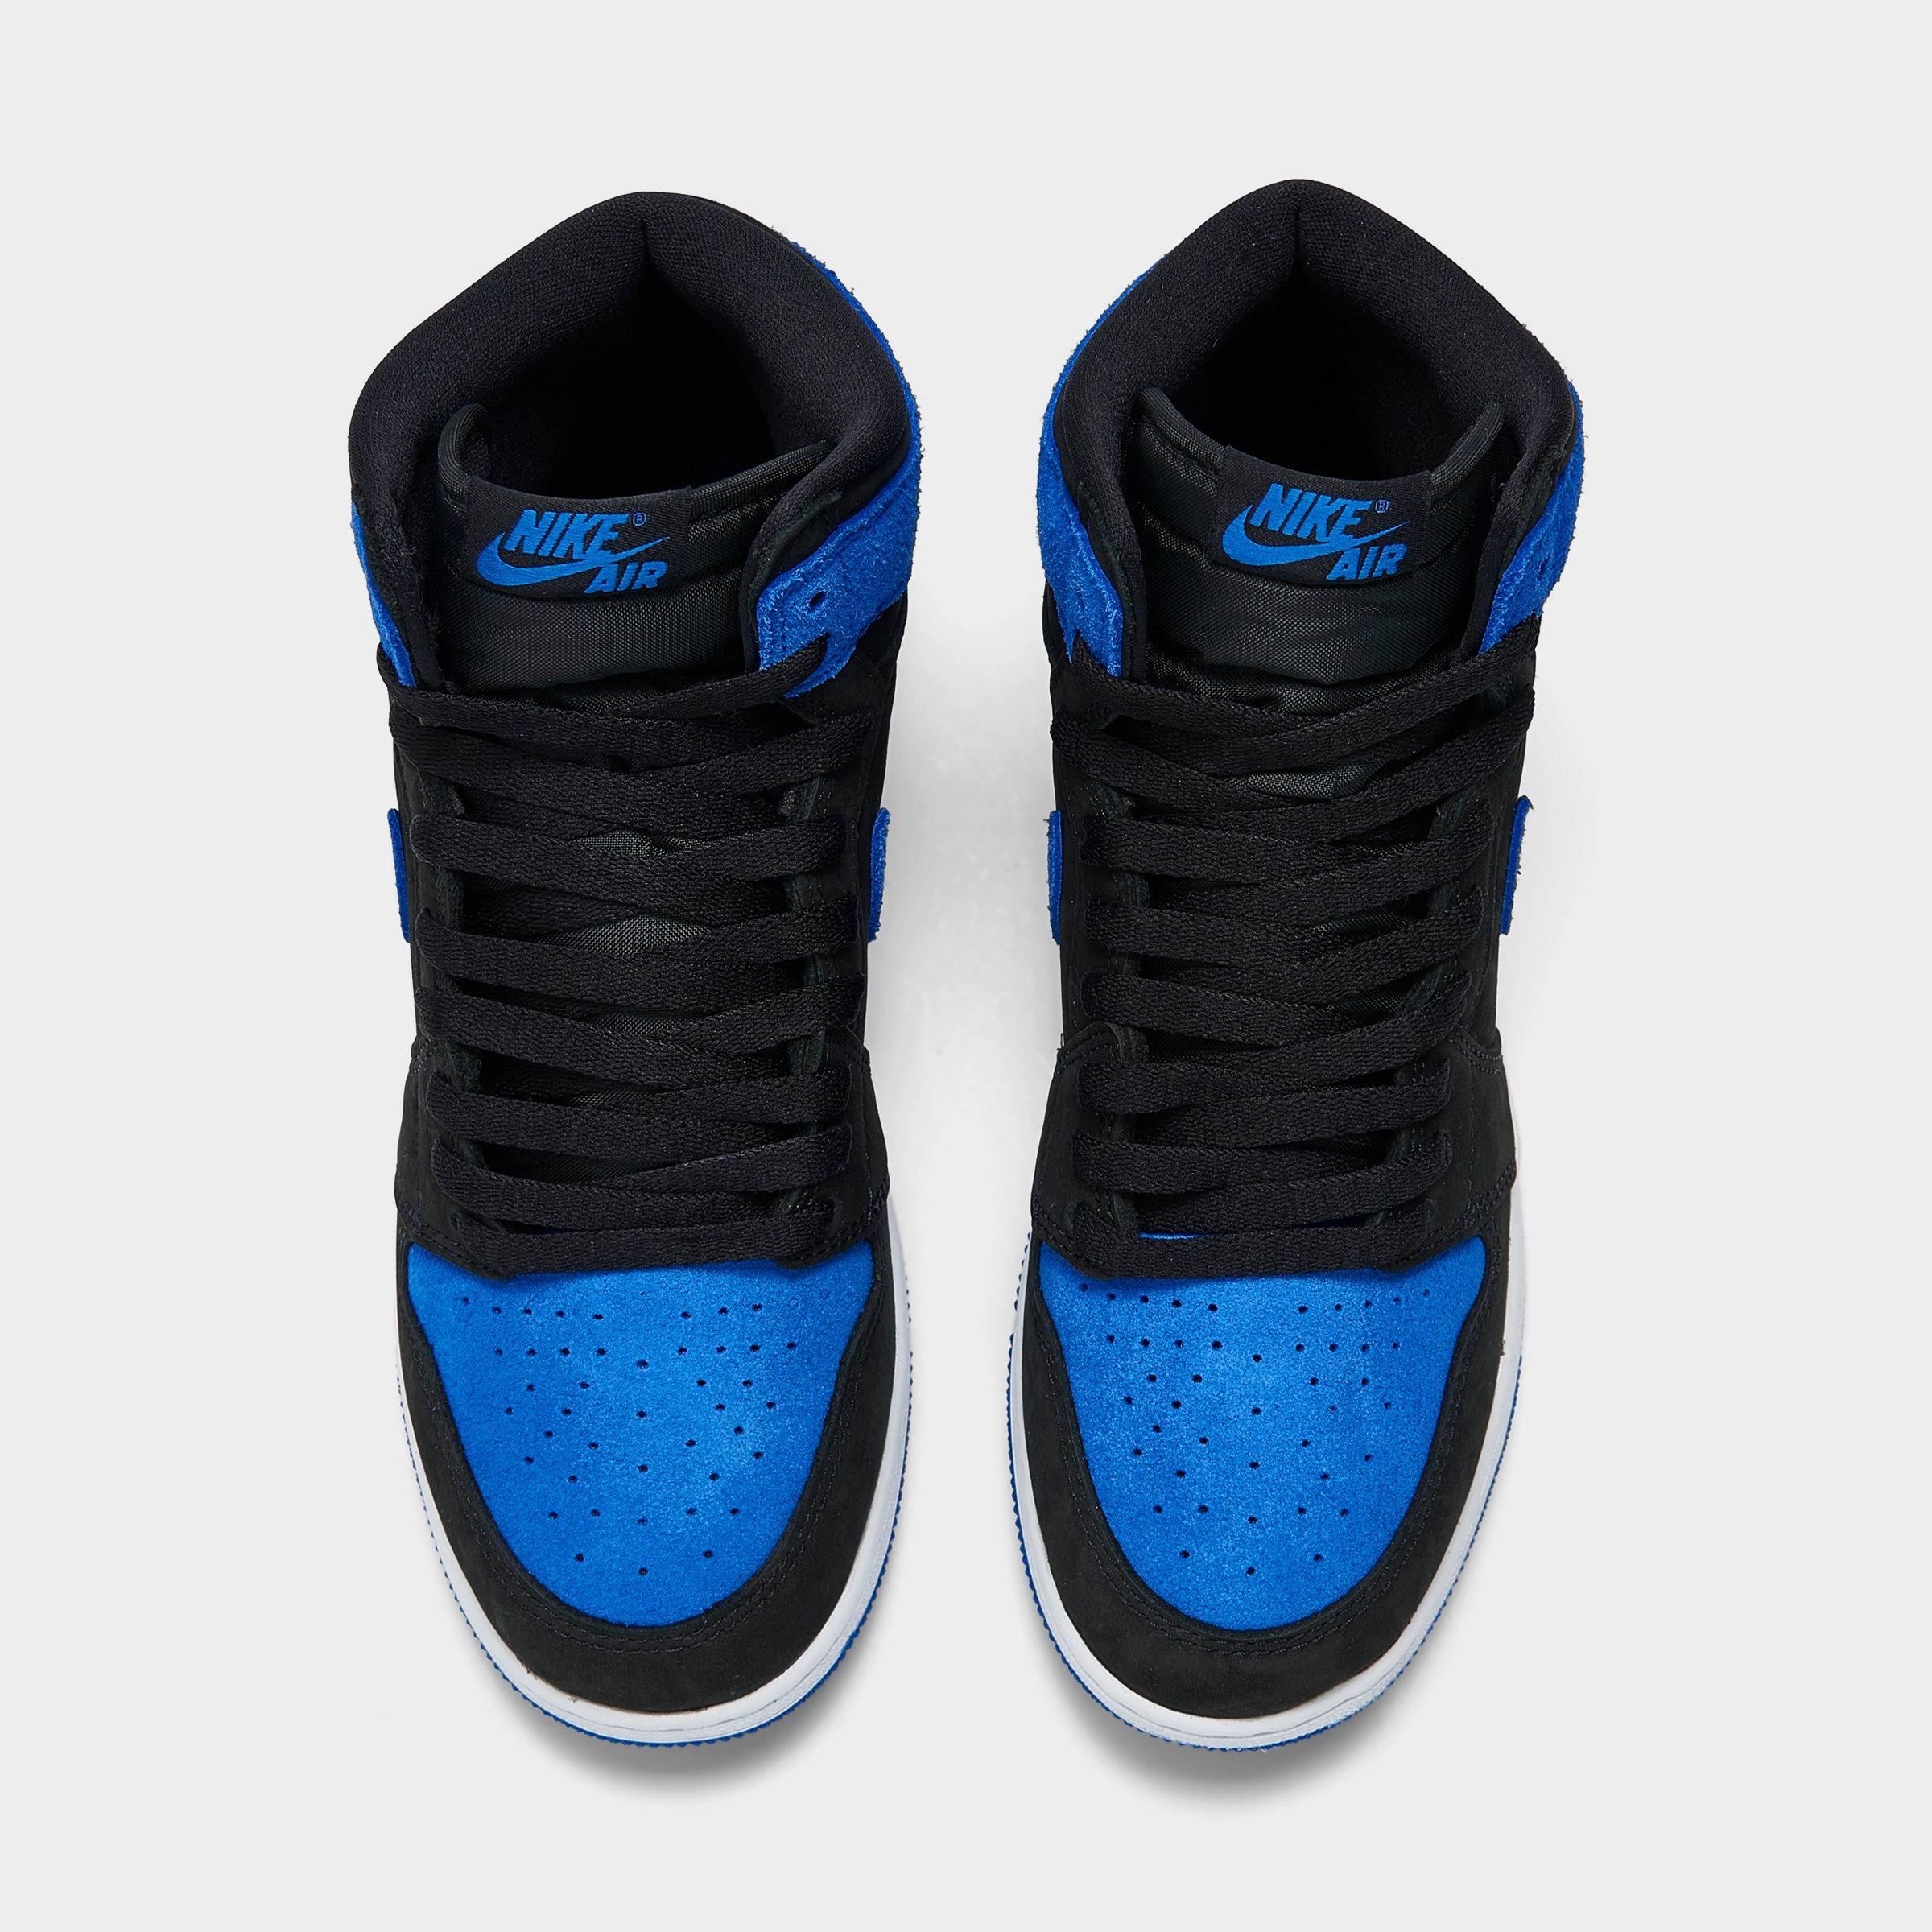 Jordan Air Jordan 1 High OG sneakers - Blue